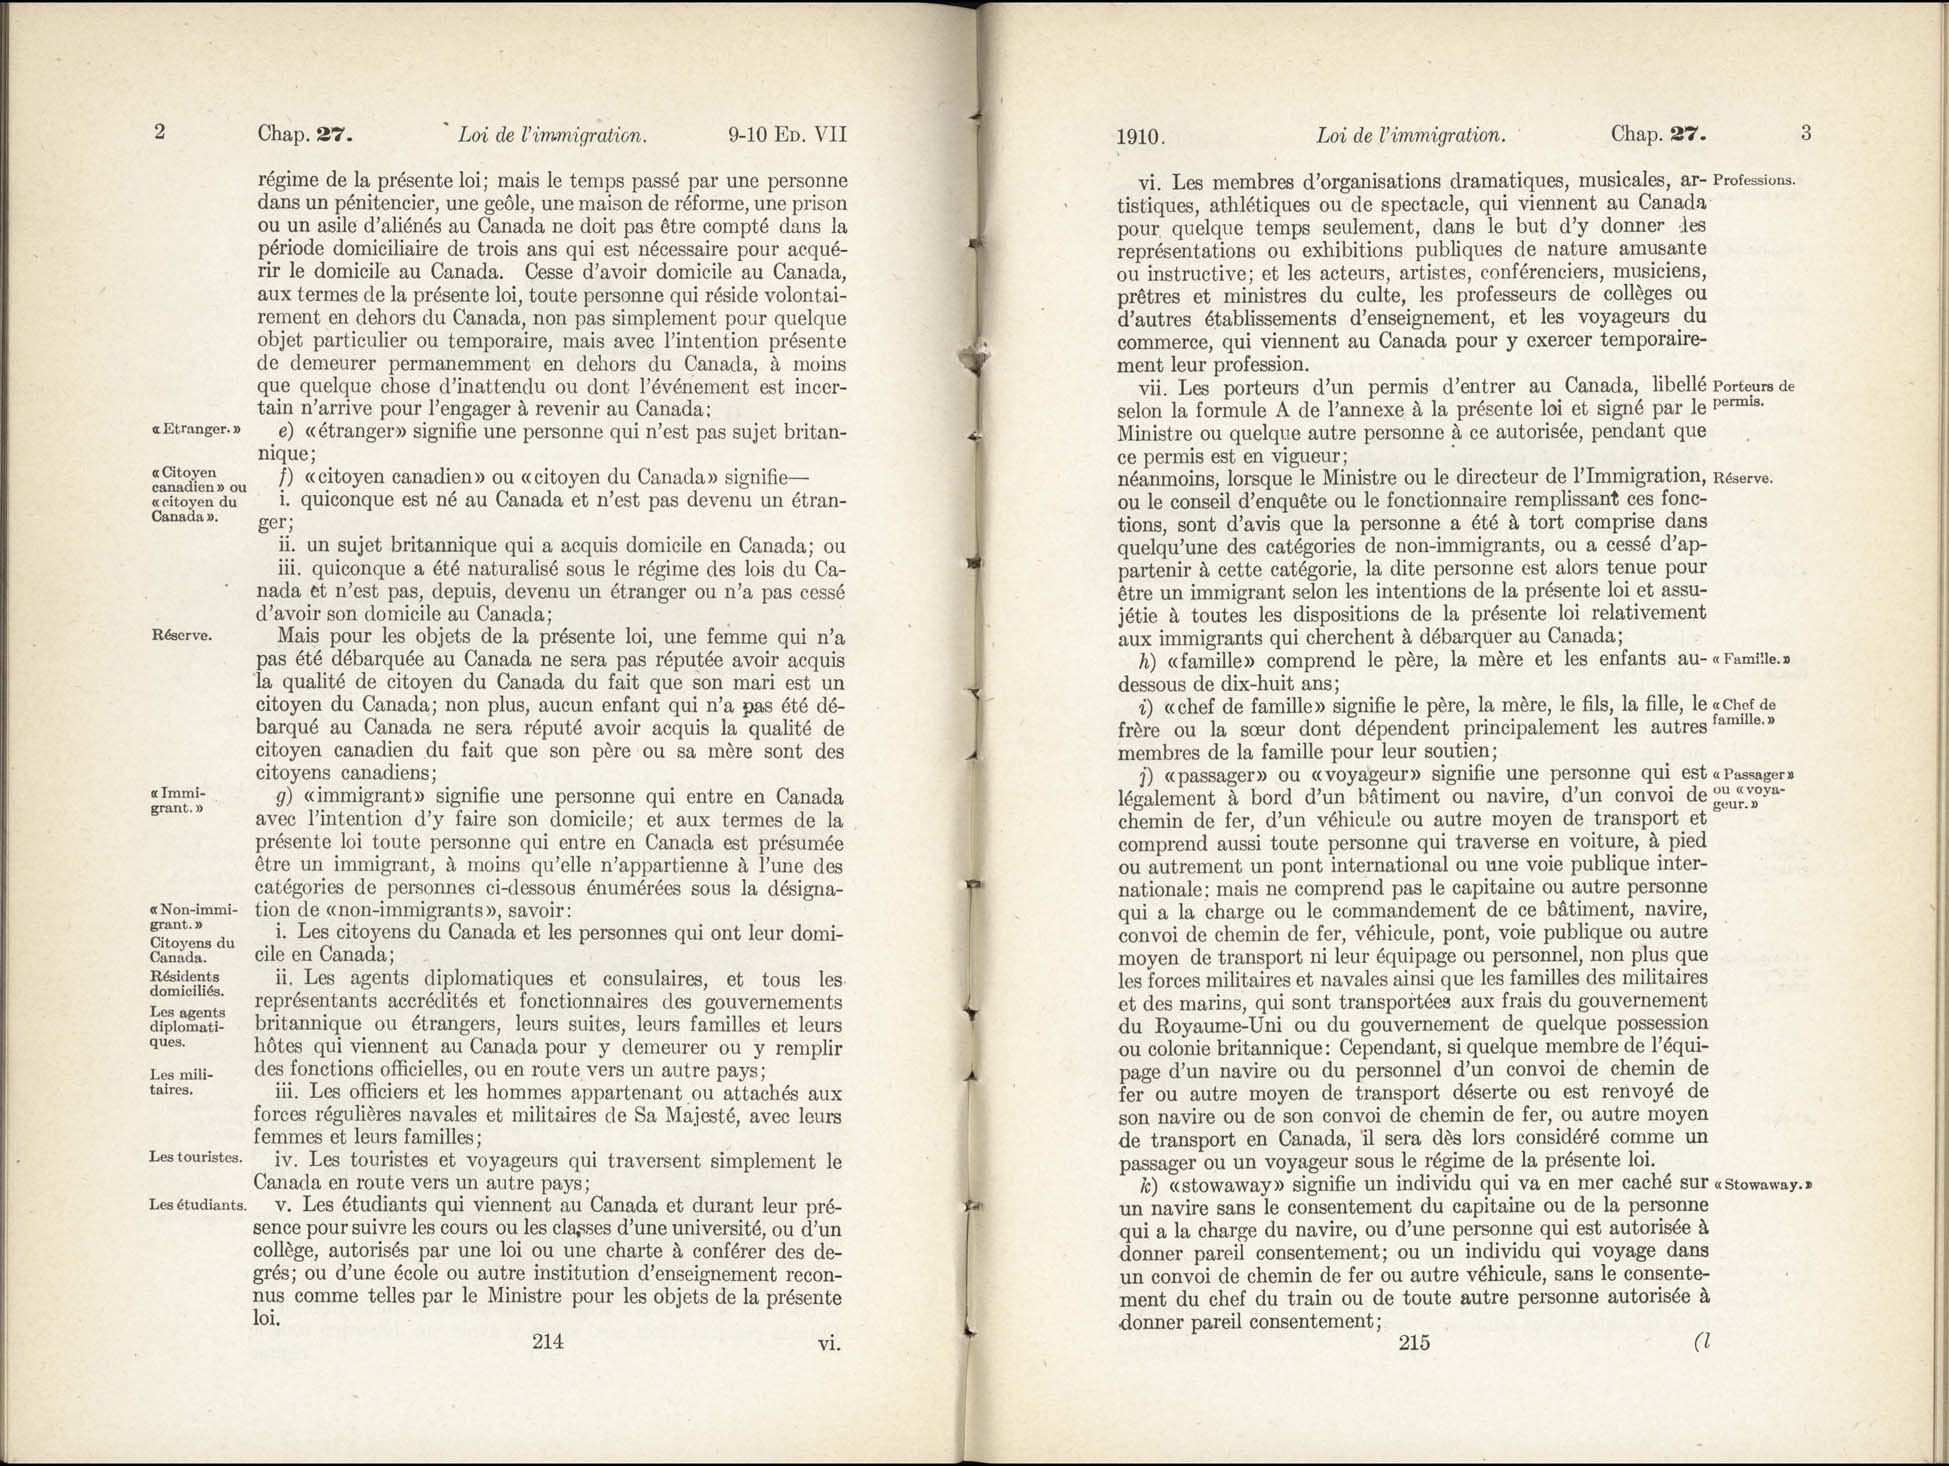 Chap 27 Page 214, 215 L’Acte d’immigration, 1910